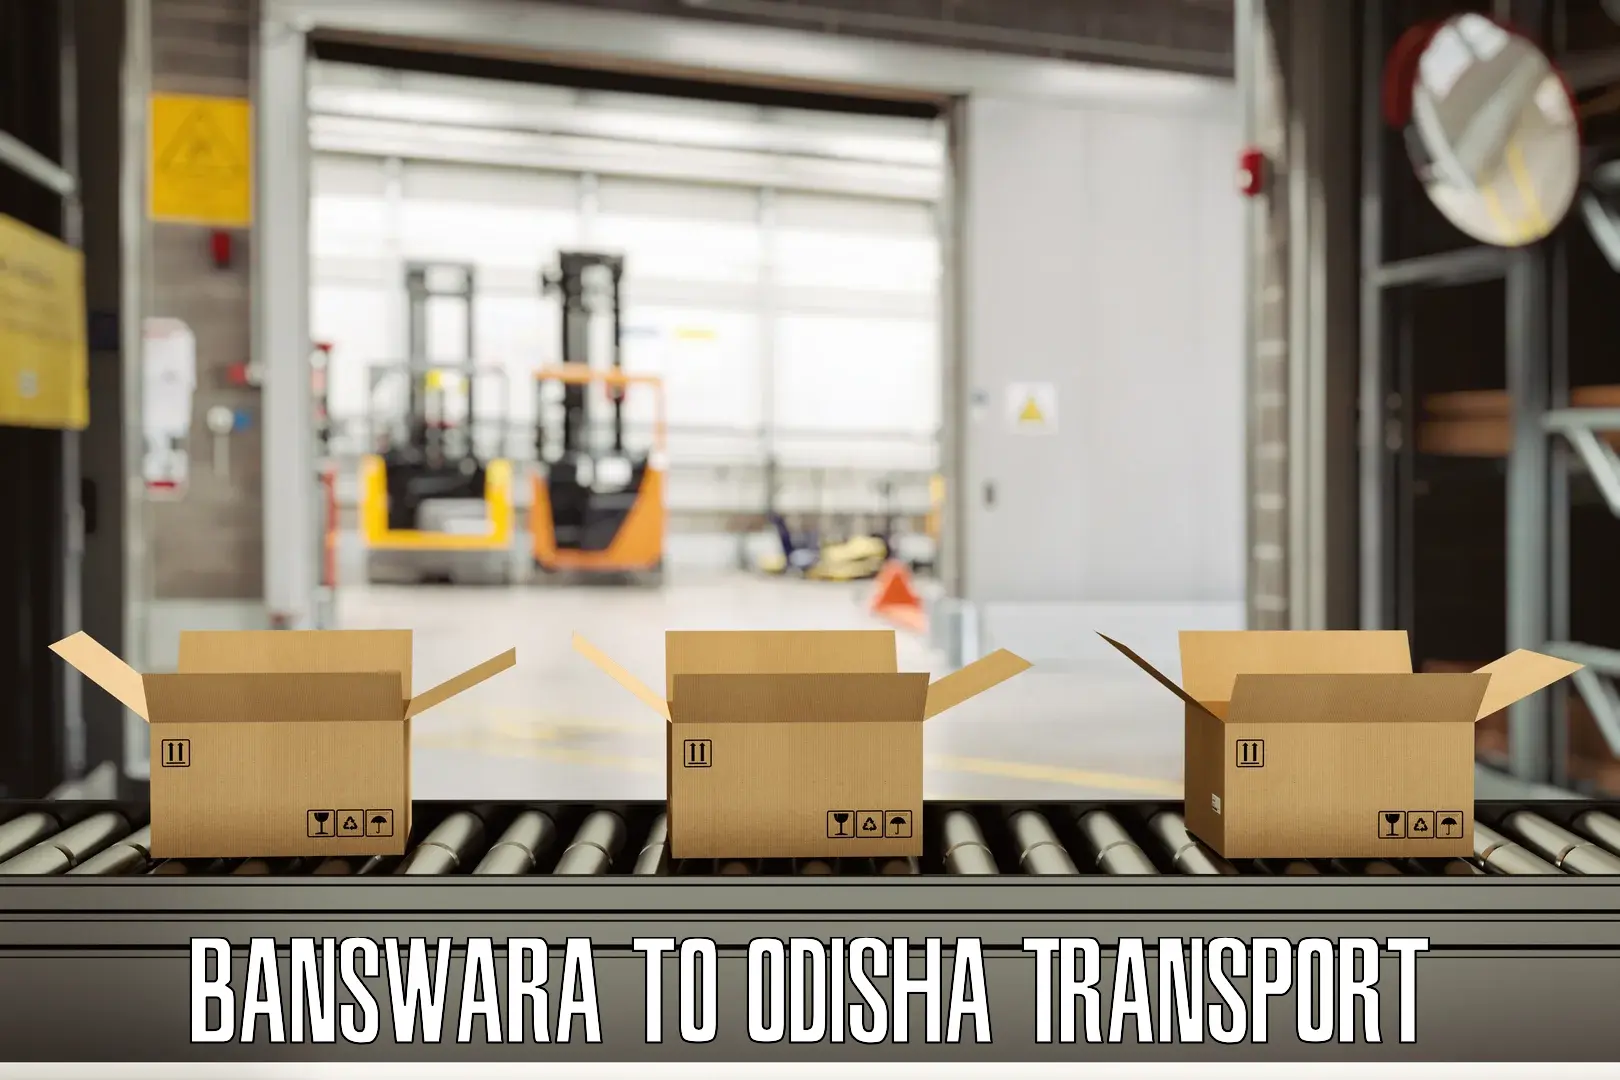 Daily parcel service transport Banswara to Kalahandi